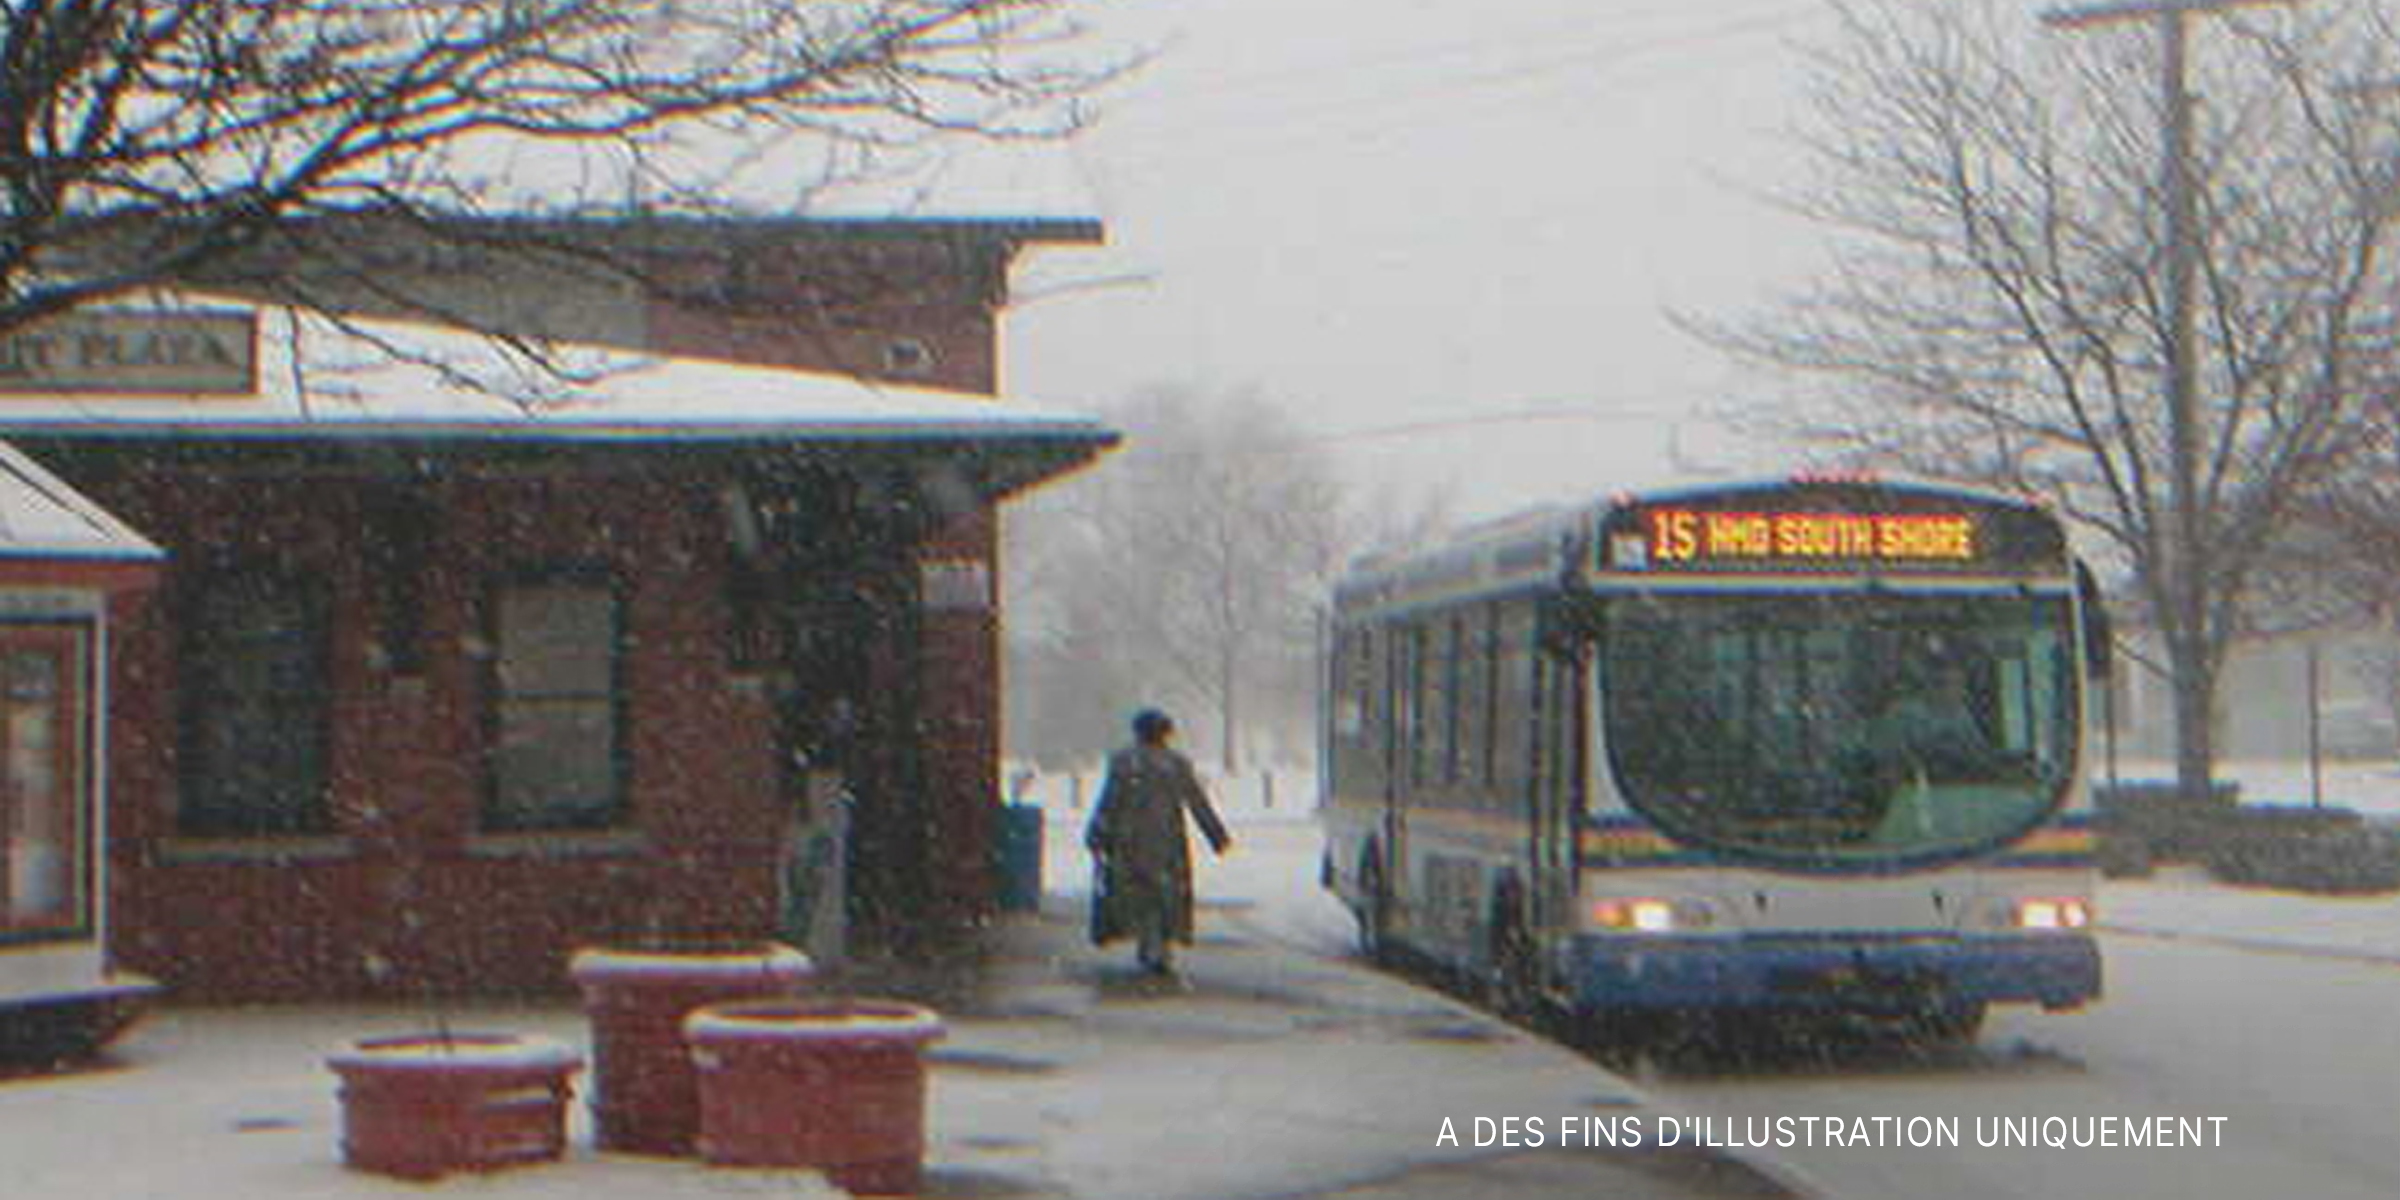 Une femme âgée à l'arrêt de bus | Source : Shutterstock